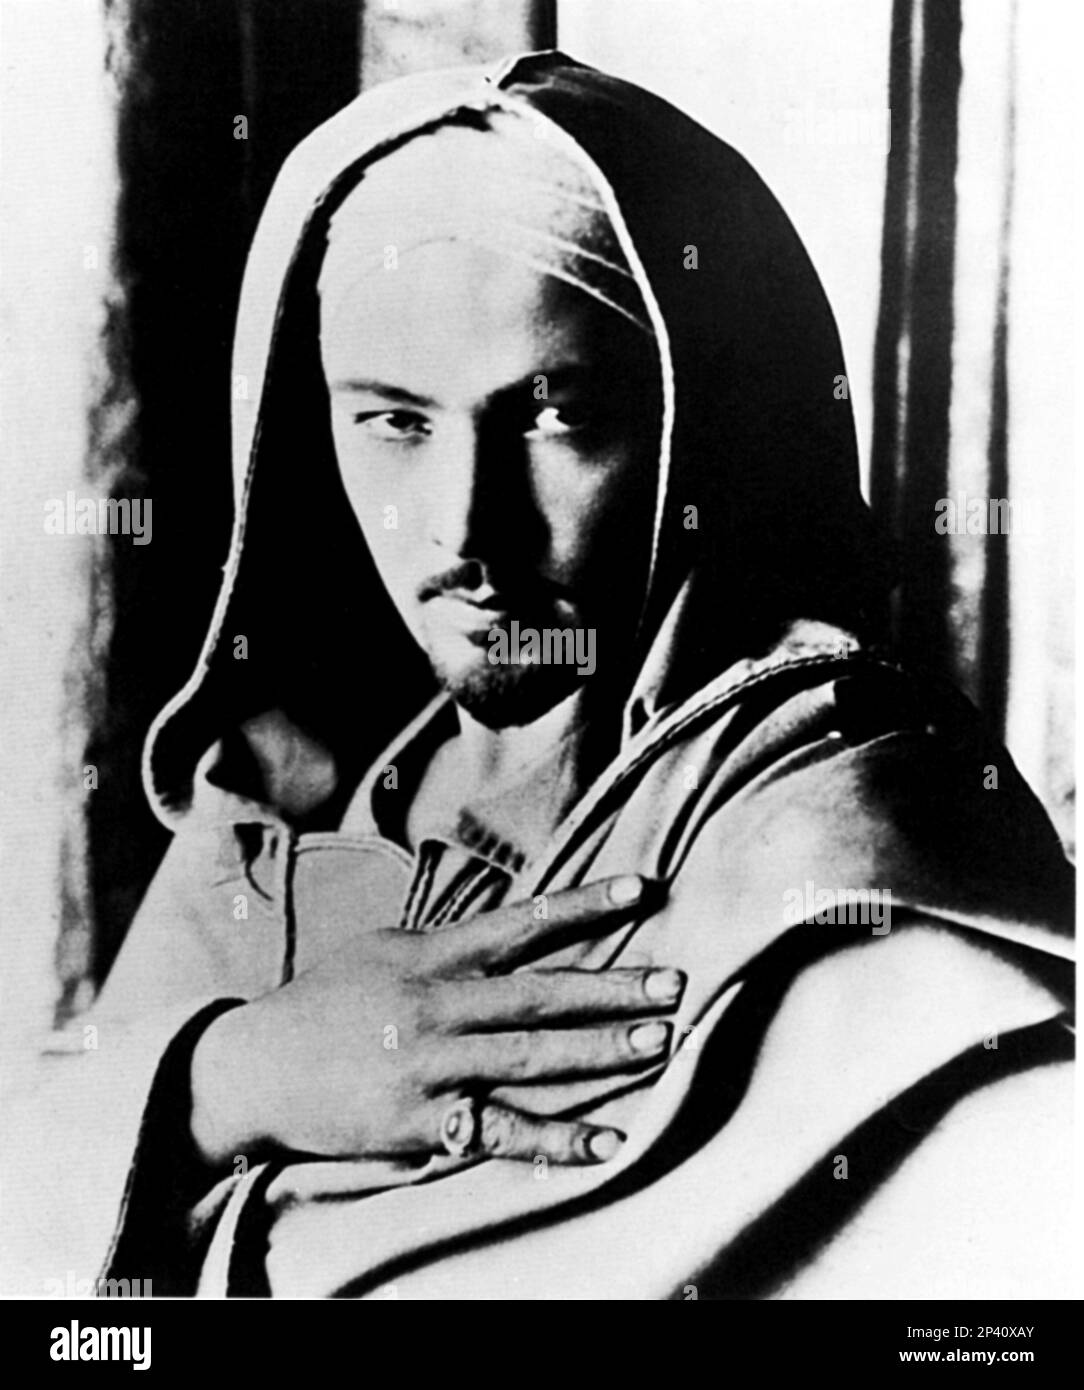 1923 , USA : The Silent Screen movie actor RUDOLPH VALENTINO ( Rodolfo Guglielmi , 1895 - 1926 ) In uno screen test per il film non ha mai realizzato IL FALCON CAPPUCCIO - CINEMA MUTO - attore cinematografico - LATINO LOVER - italoamericano - italo americano - italo-americano - emigrante - emigrante - italo-americano - ritratto - ritratto - baffi - baffi - barba - pizzetto - oriente - Arabo - caffetano - anello - anello - mano ---- Archivio GBB Foto Stock